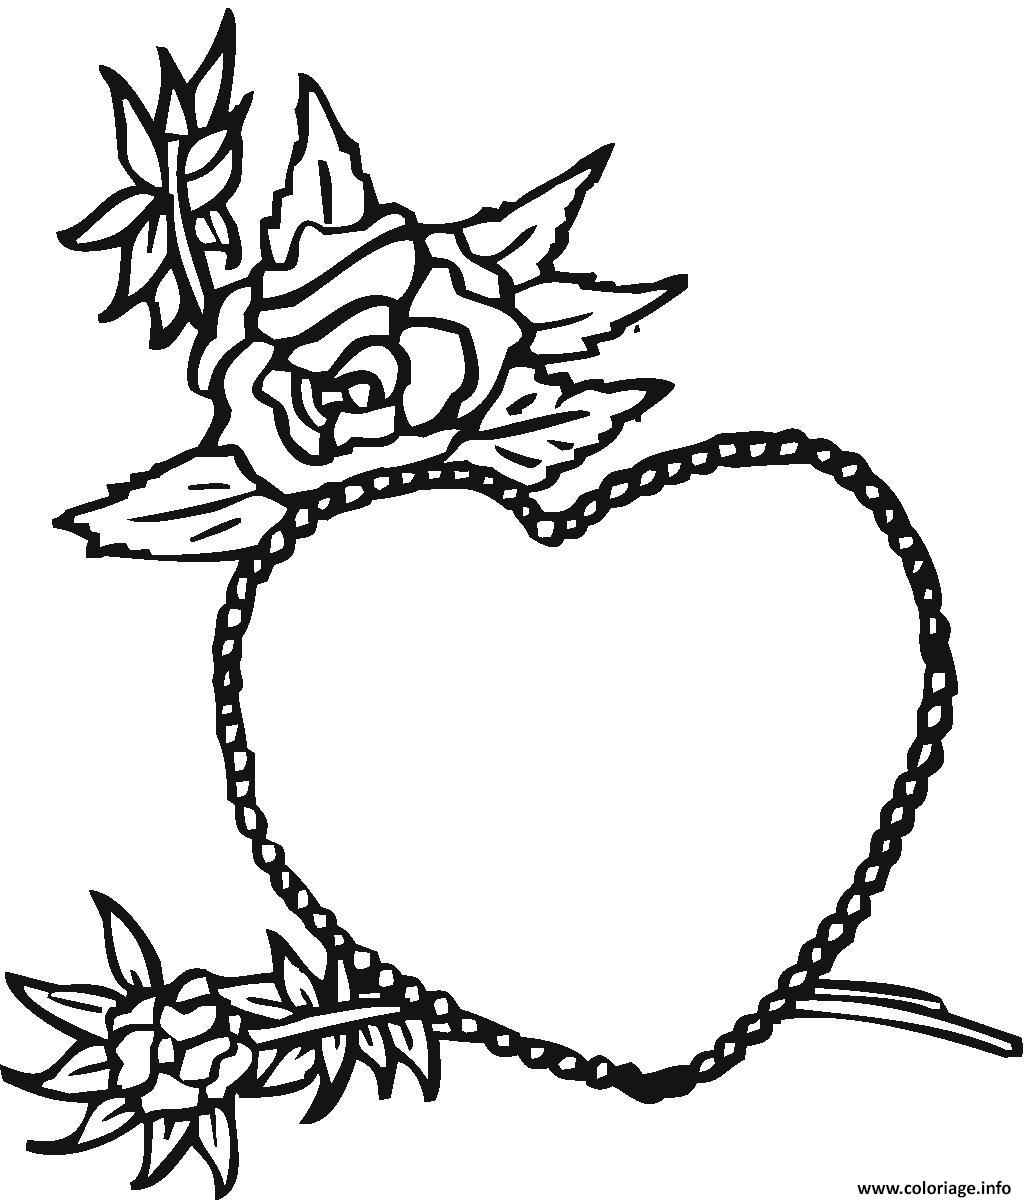 Dessin coeur avec roses amoureux Coloriage Gratuit à Imprimer